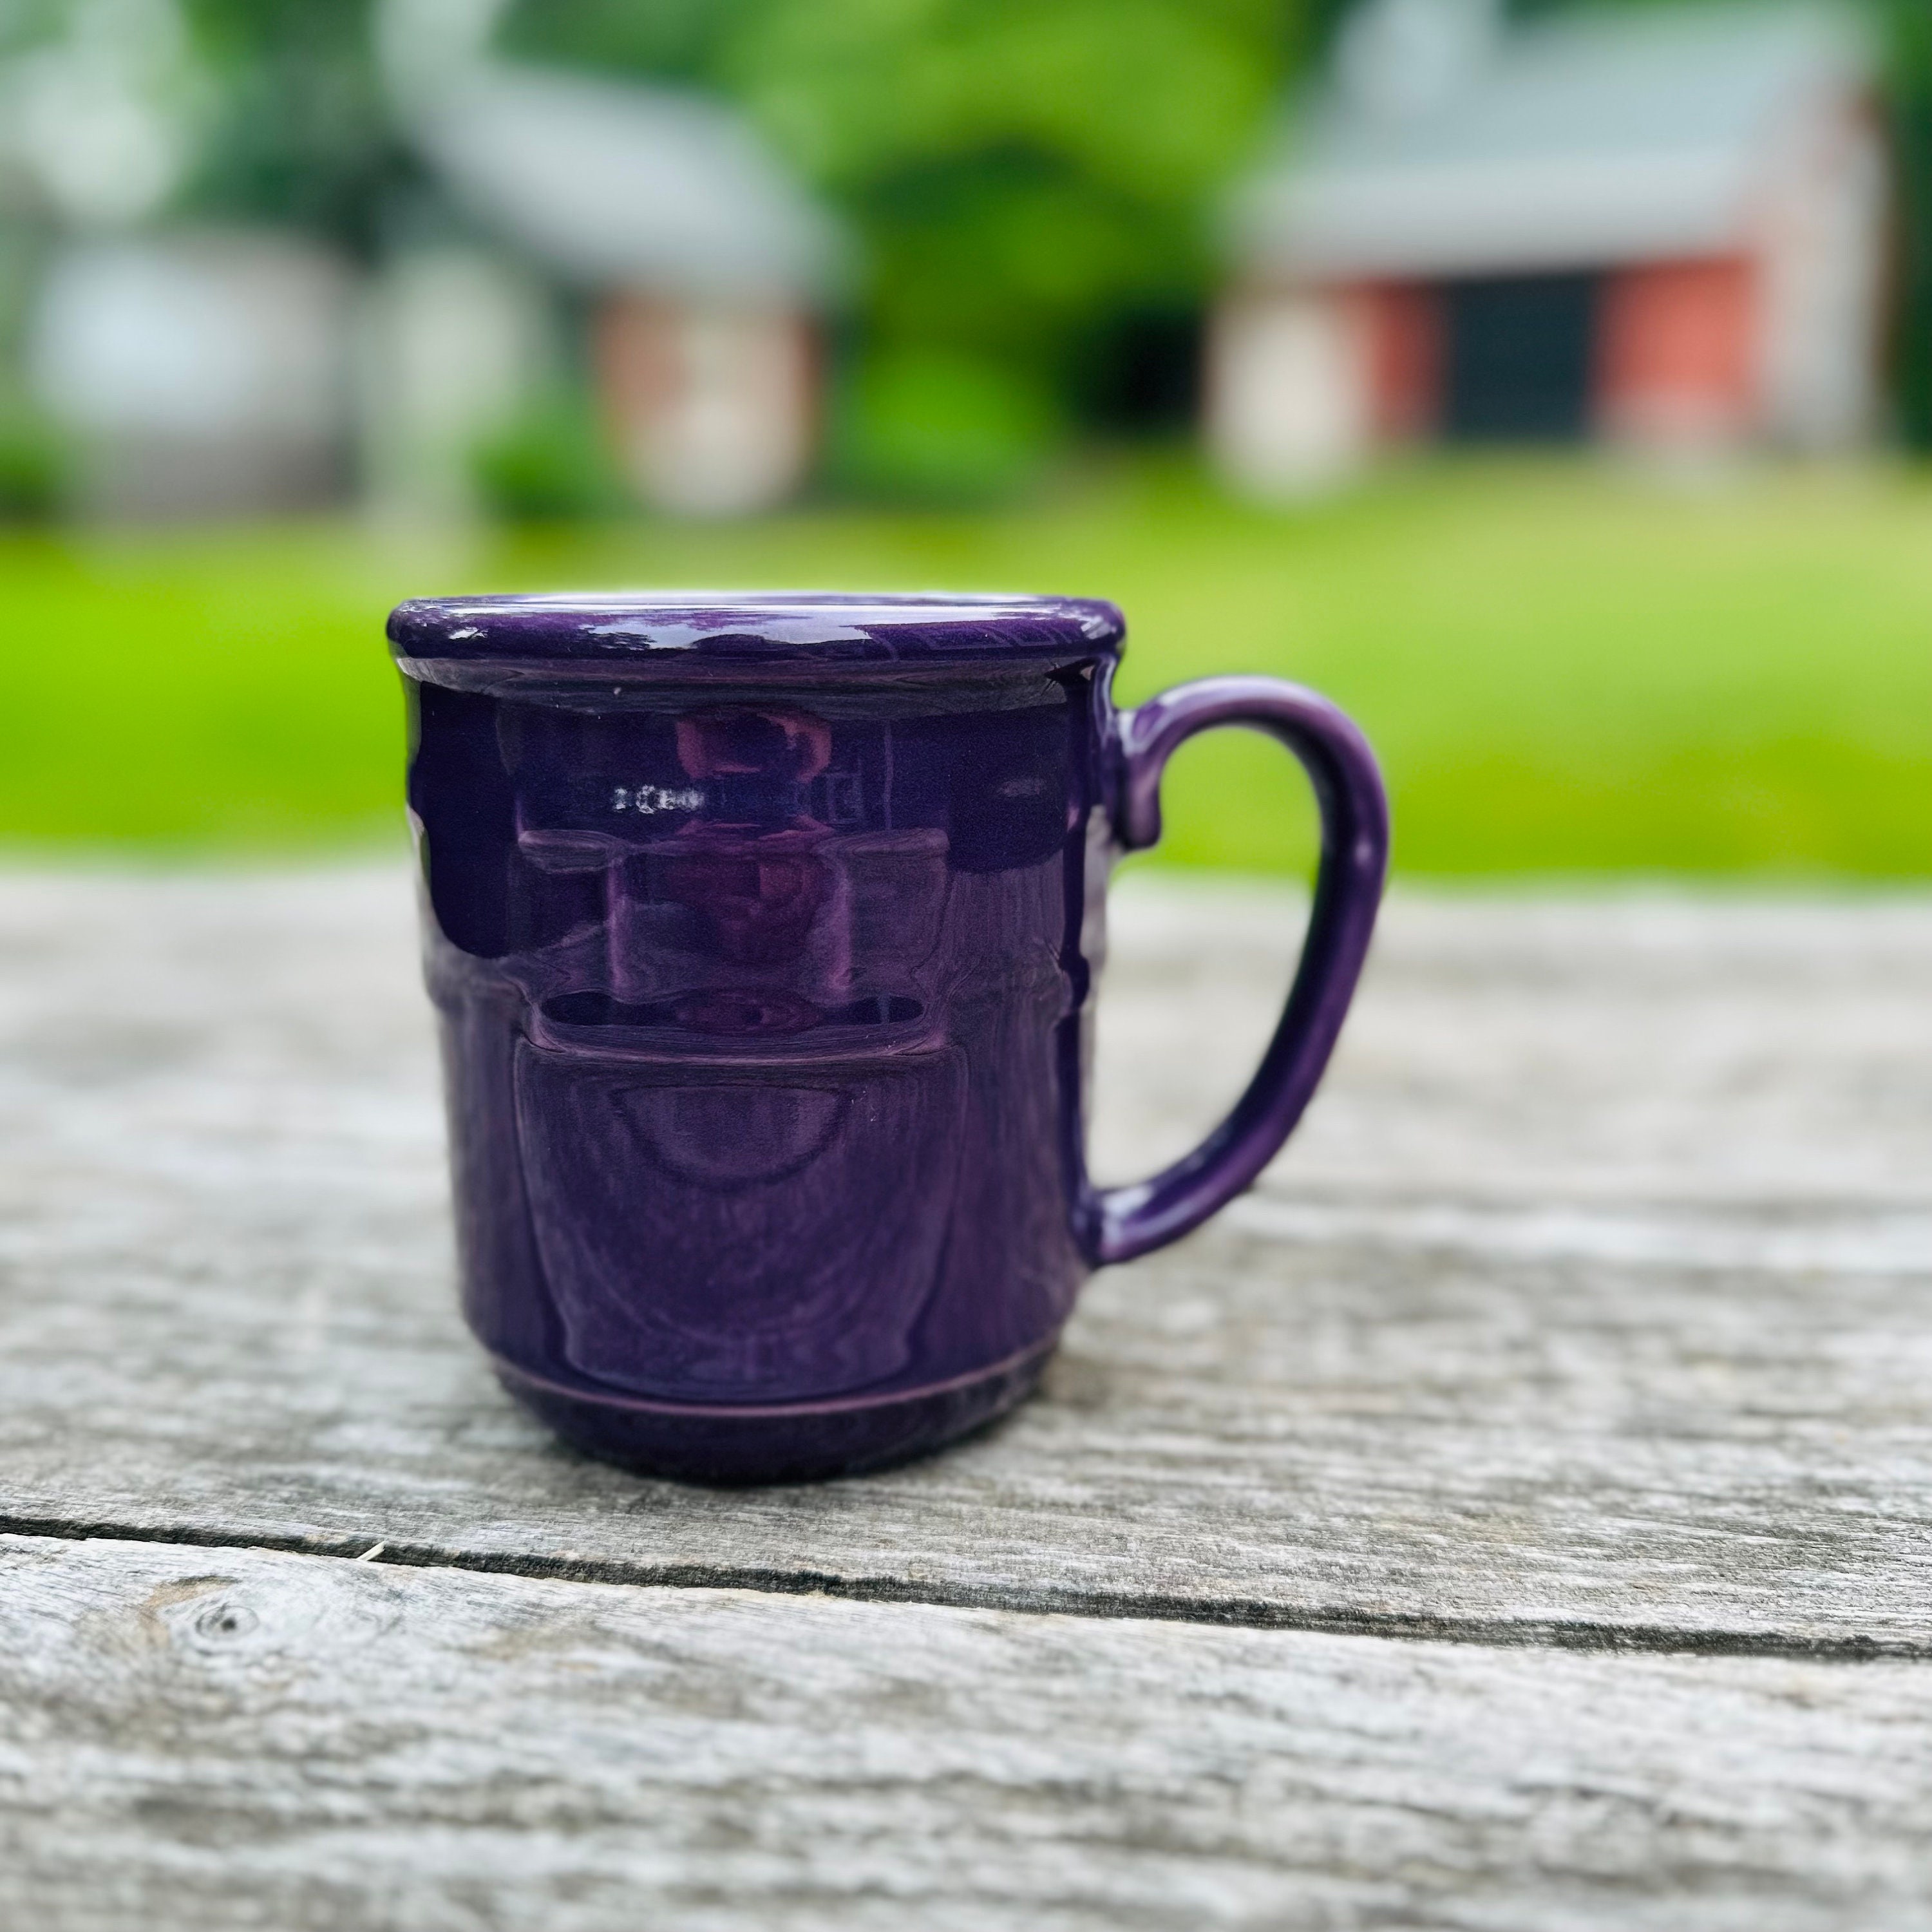 Eggplant Purple Ceramic Coffee Travel mug with handle and black lid -  BlueRoomPottery plus (+)